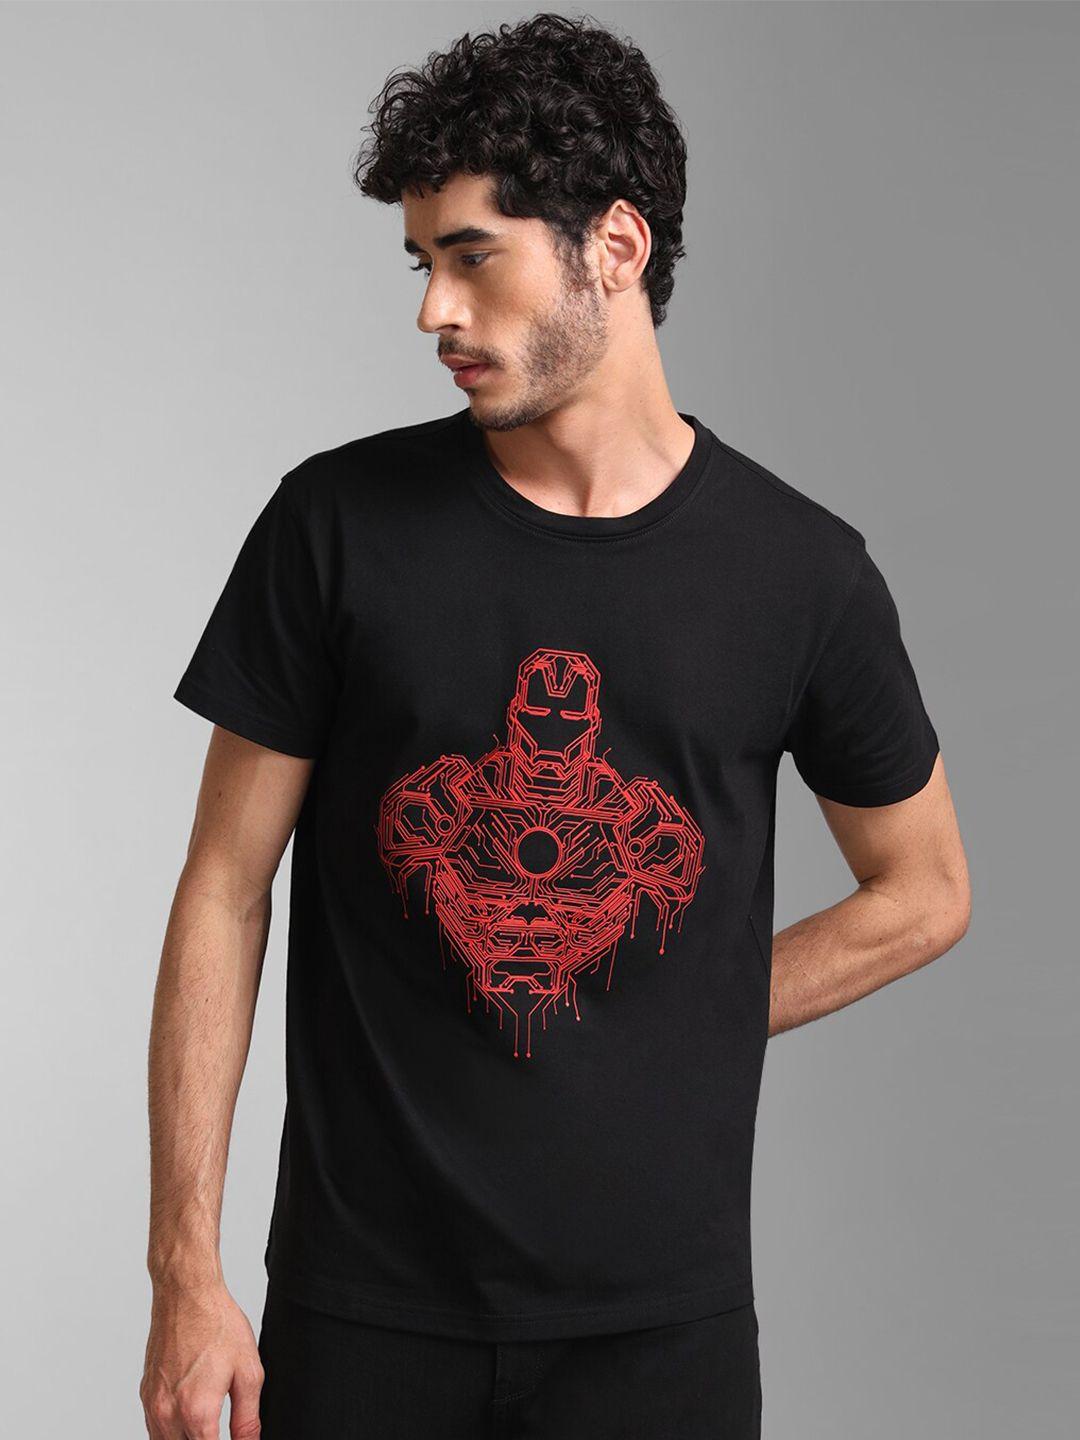 kz07 by kazo men black avengers printed cotton t-shirt